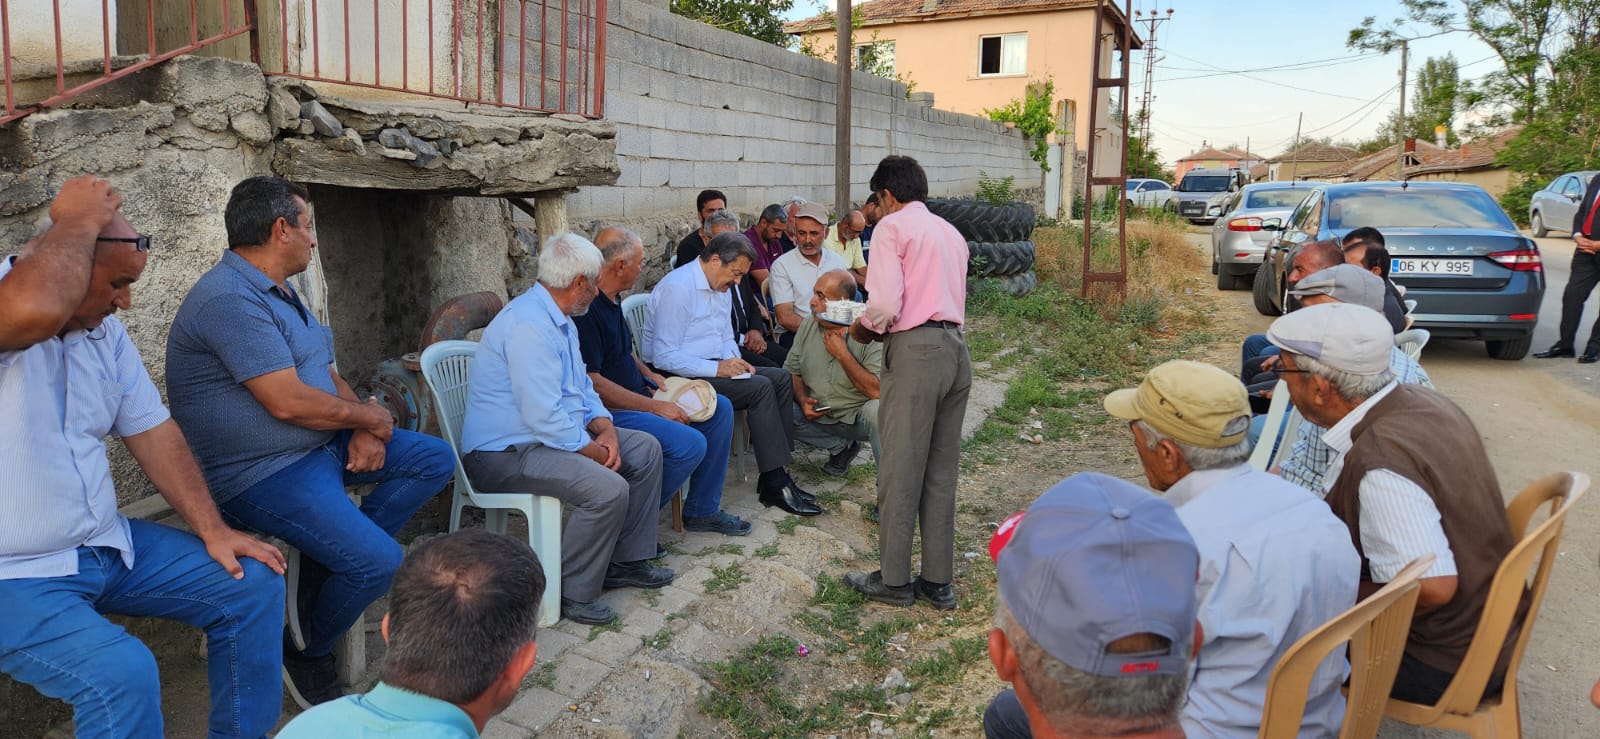 İYİ Parti Yozgat Milletvekili Lütfullah Kayalar: “Çiftçilerimizin Yanındayız, TBMM’de Girişimlerde Bulunacağız”